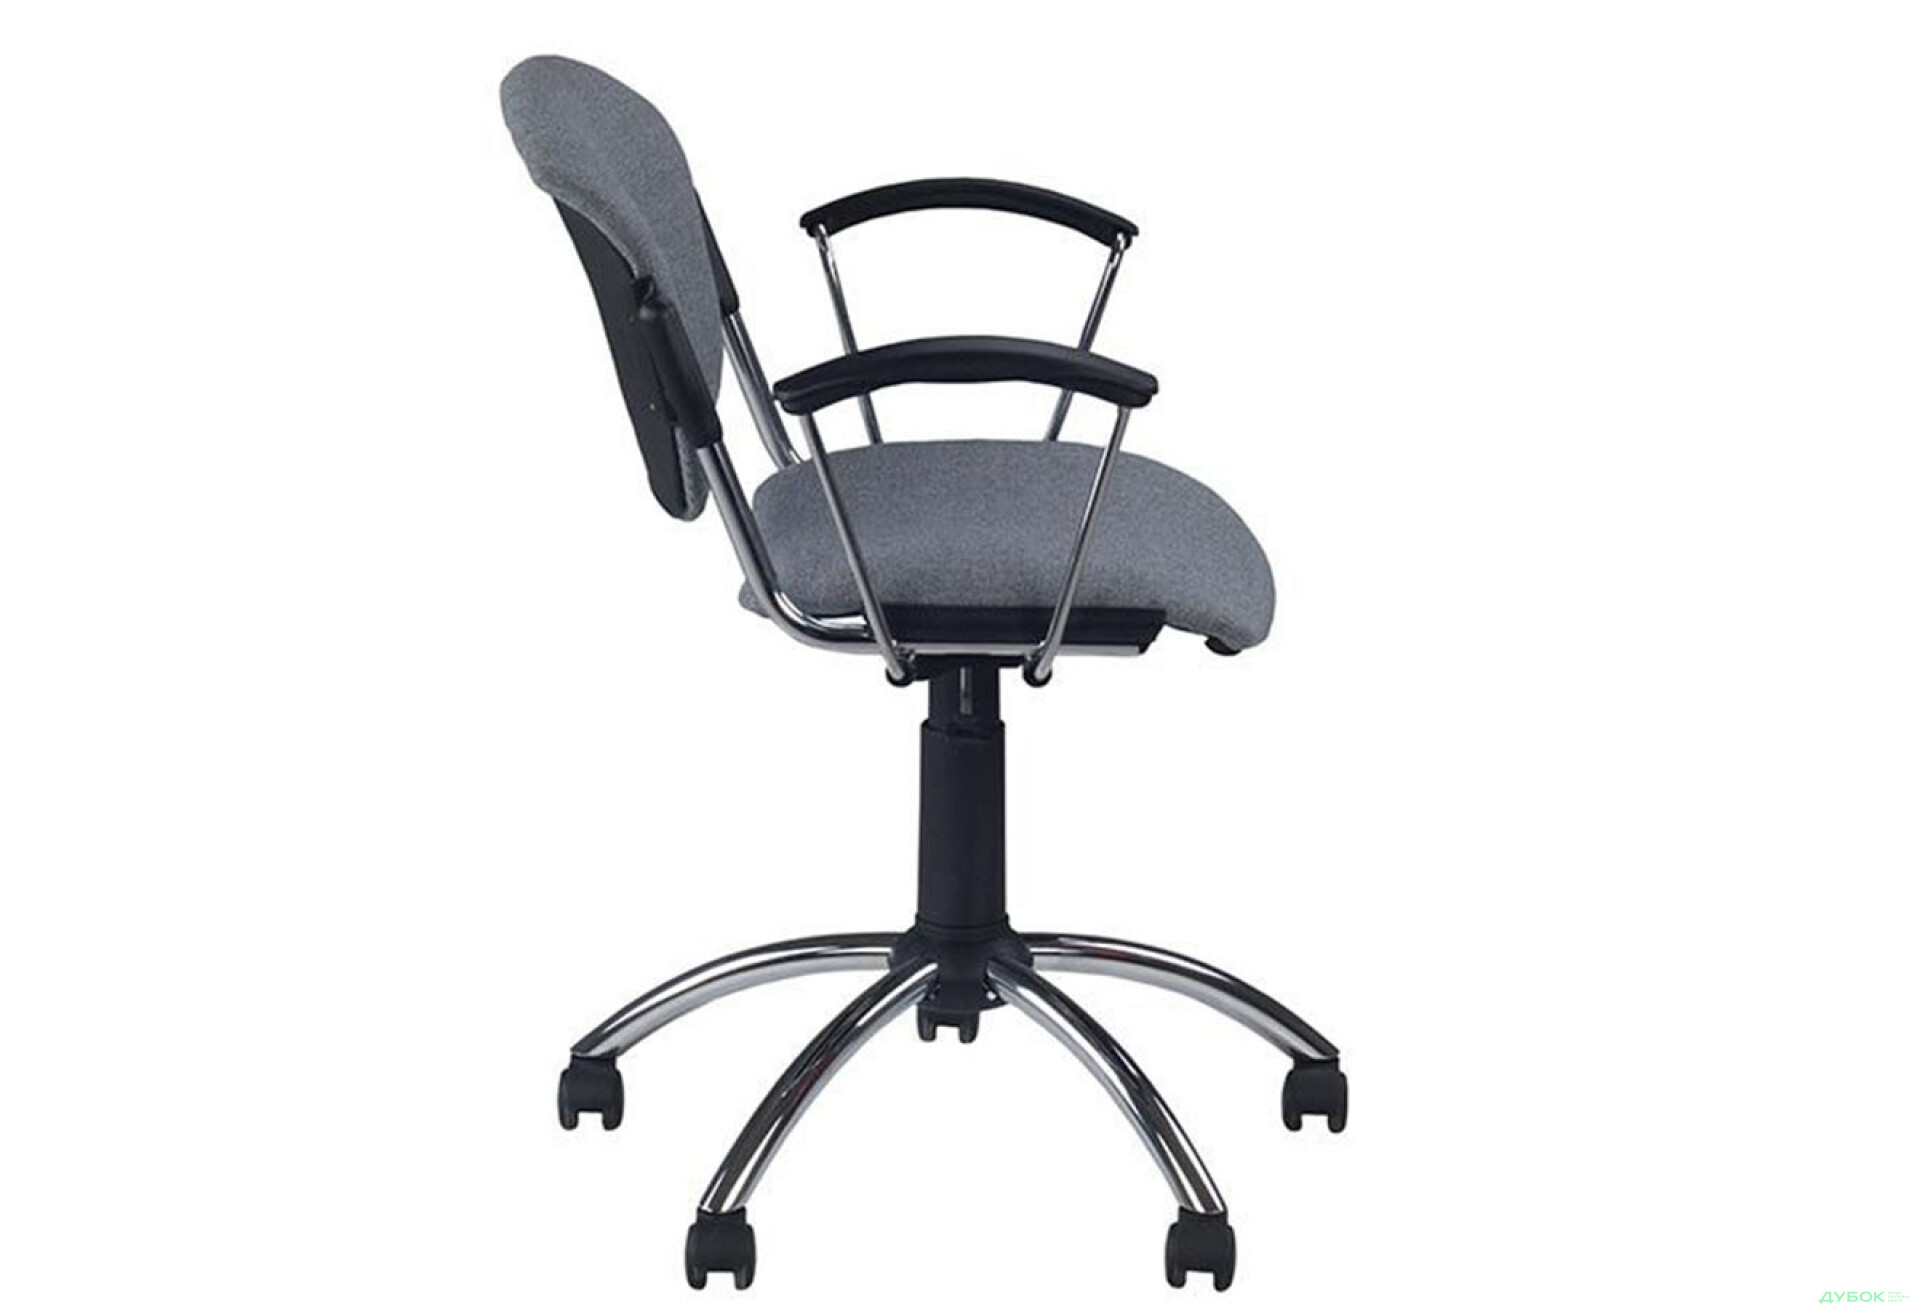 Фото 3 - Компьютерное кресло Новый Стиль Era GTP chrome CHR10 62x62x94 см